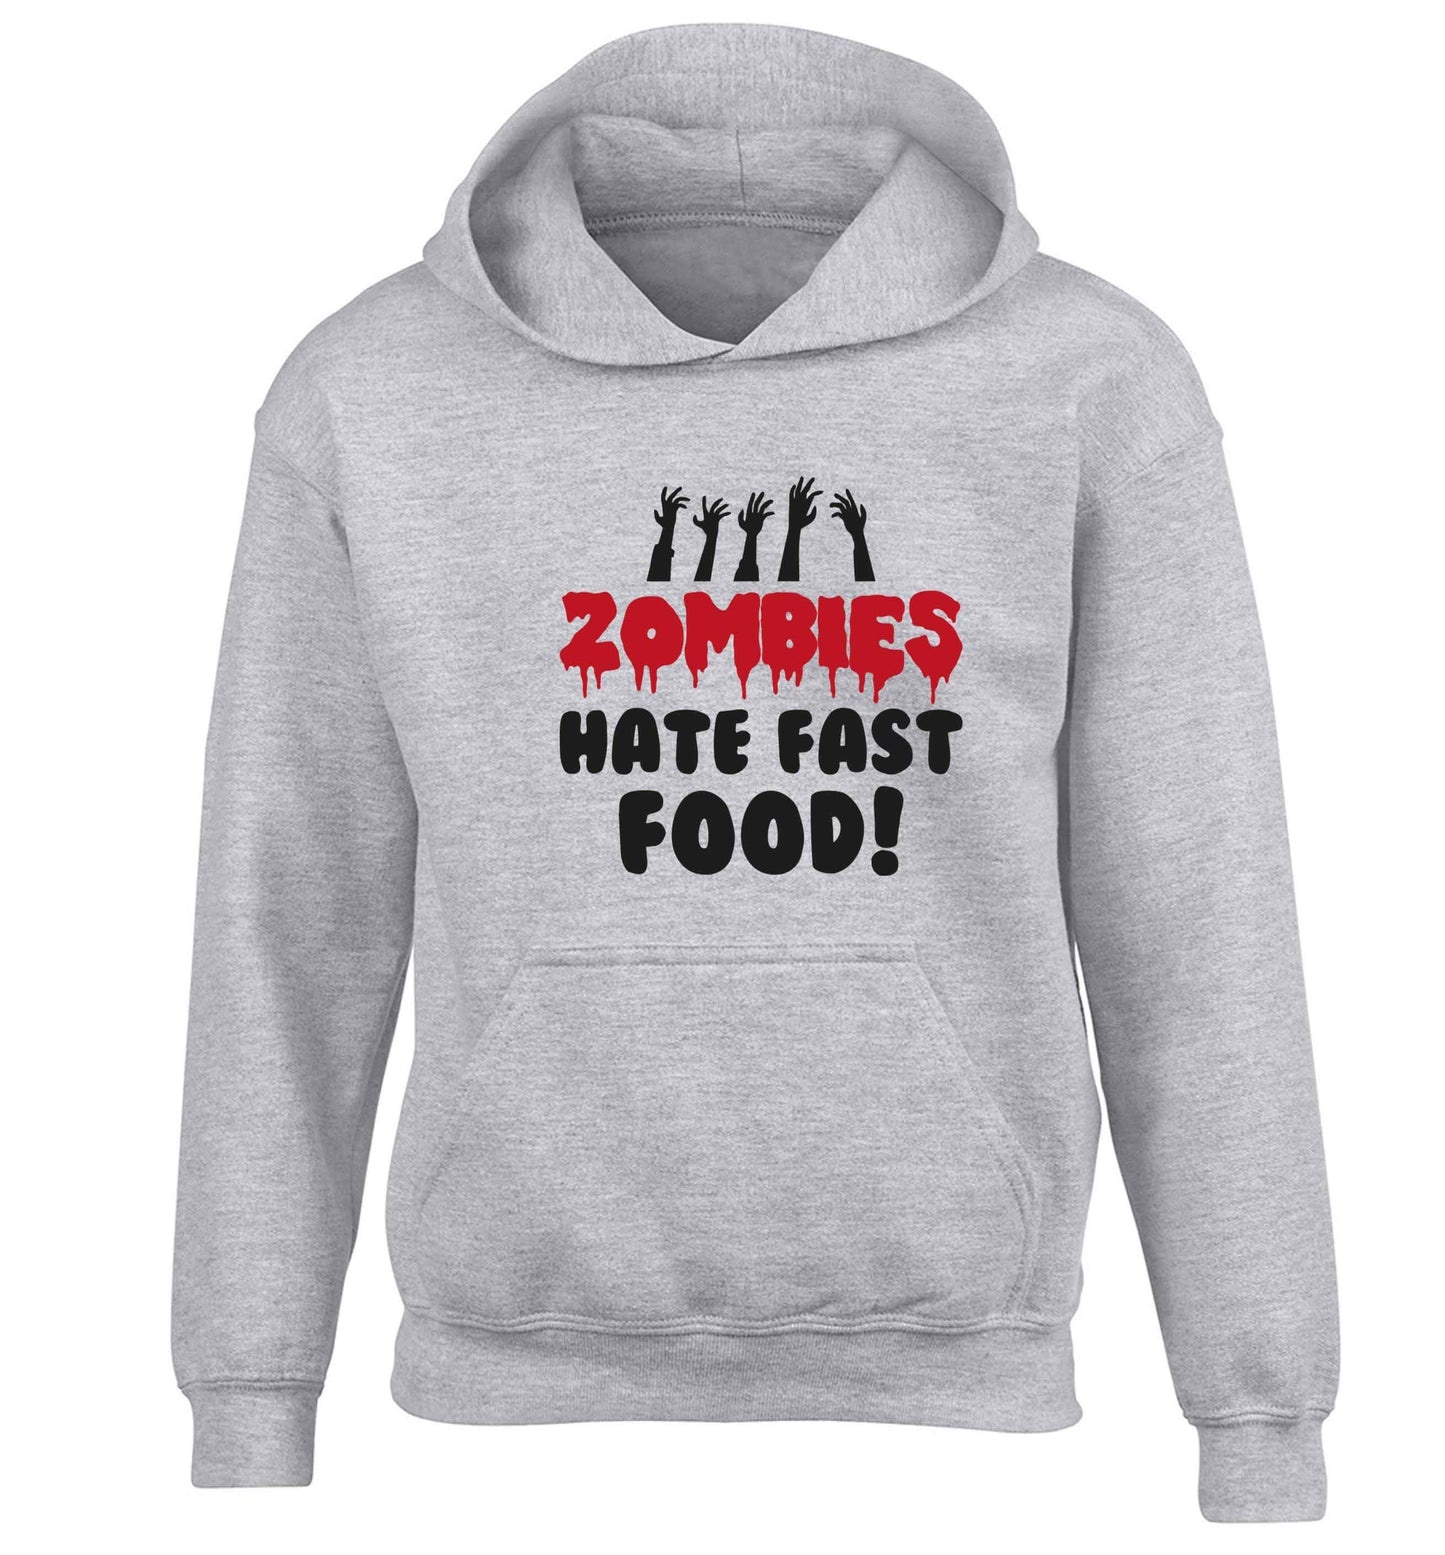 Zombies hate fast food children's grey hoodie 12-13 Years